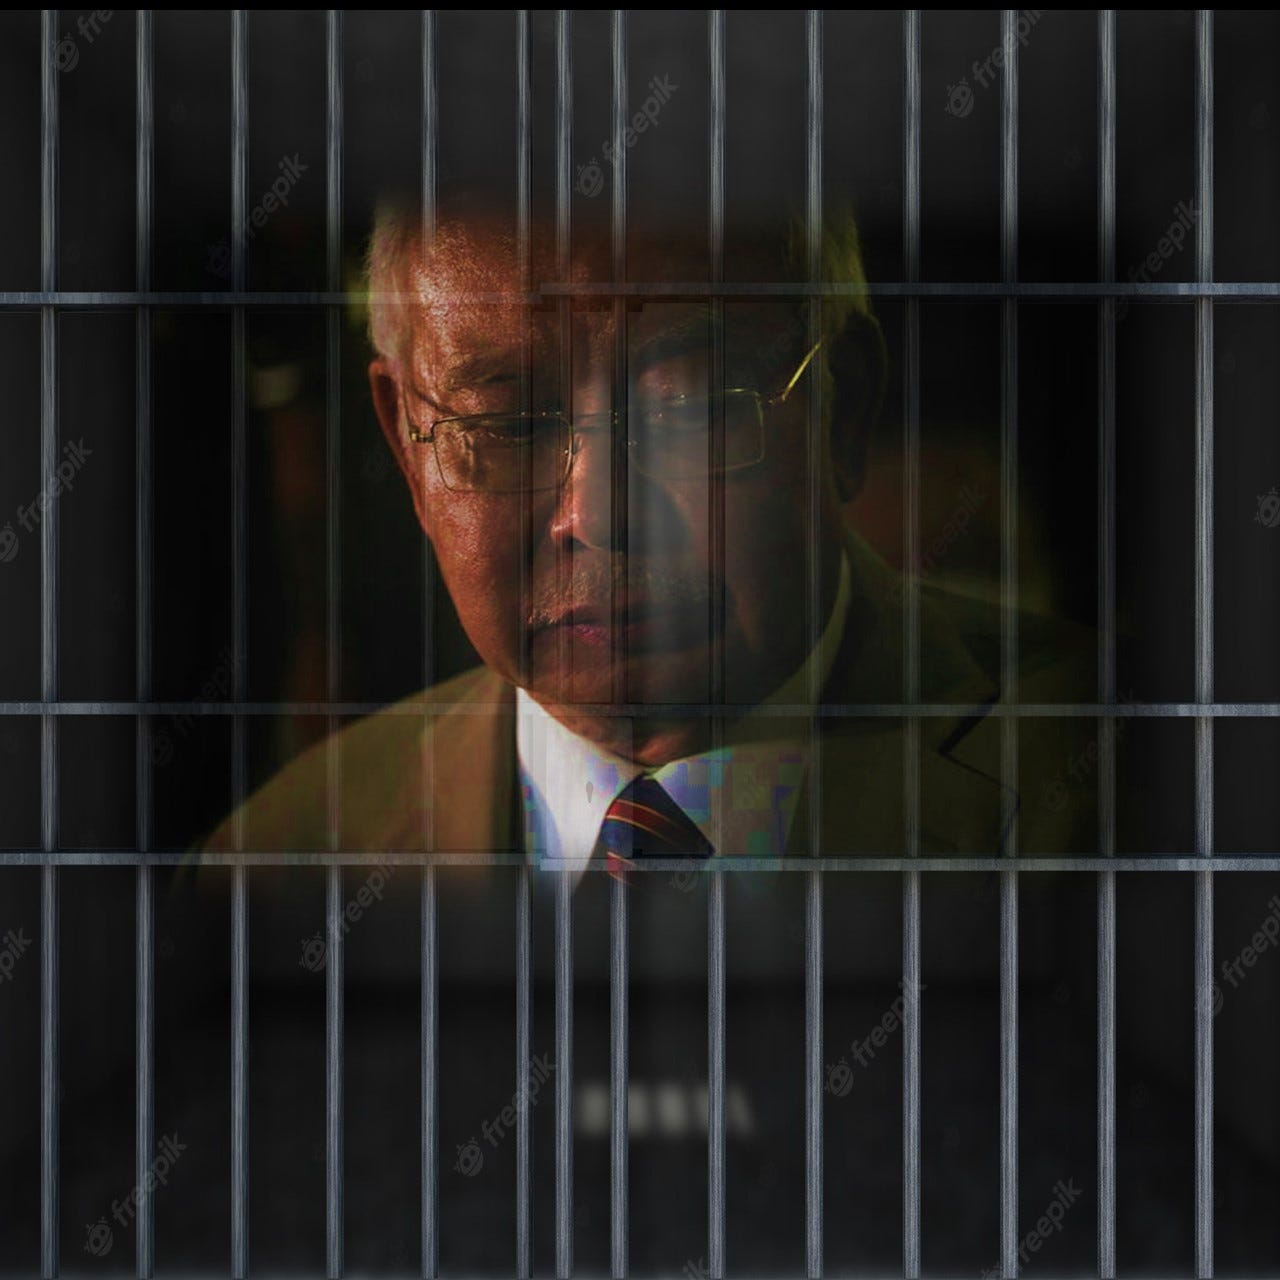 Why Isn't Najib Razak In Prison? - Nadzarin Kuok Puthucheary & Tan ("NKPT")